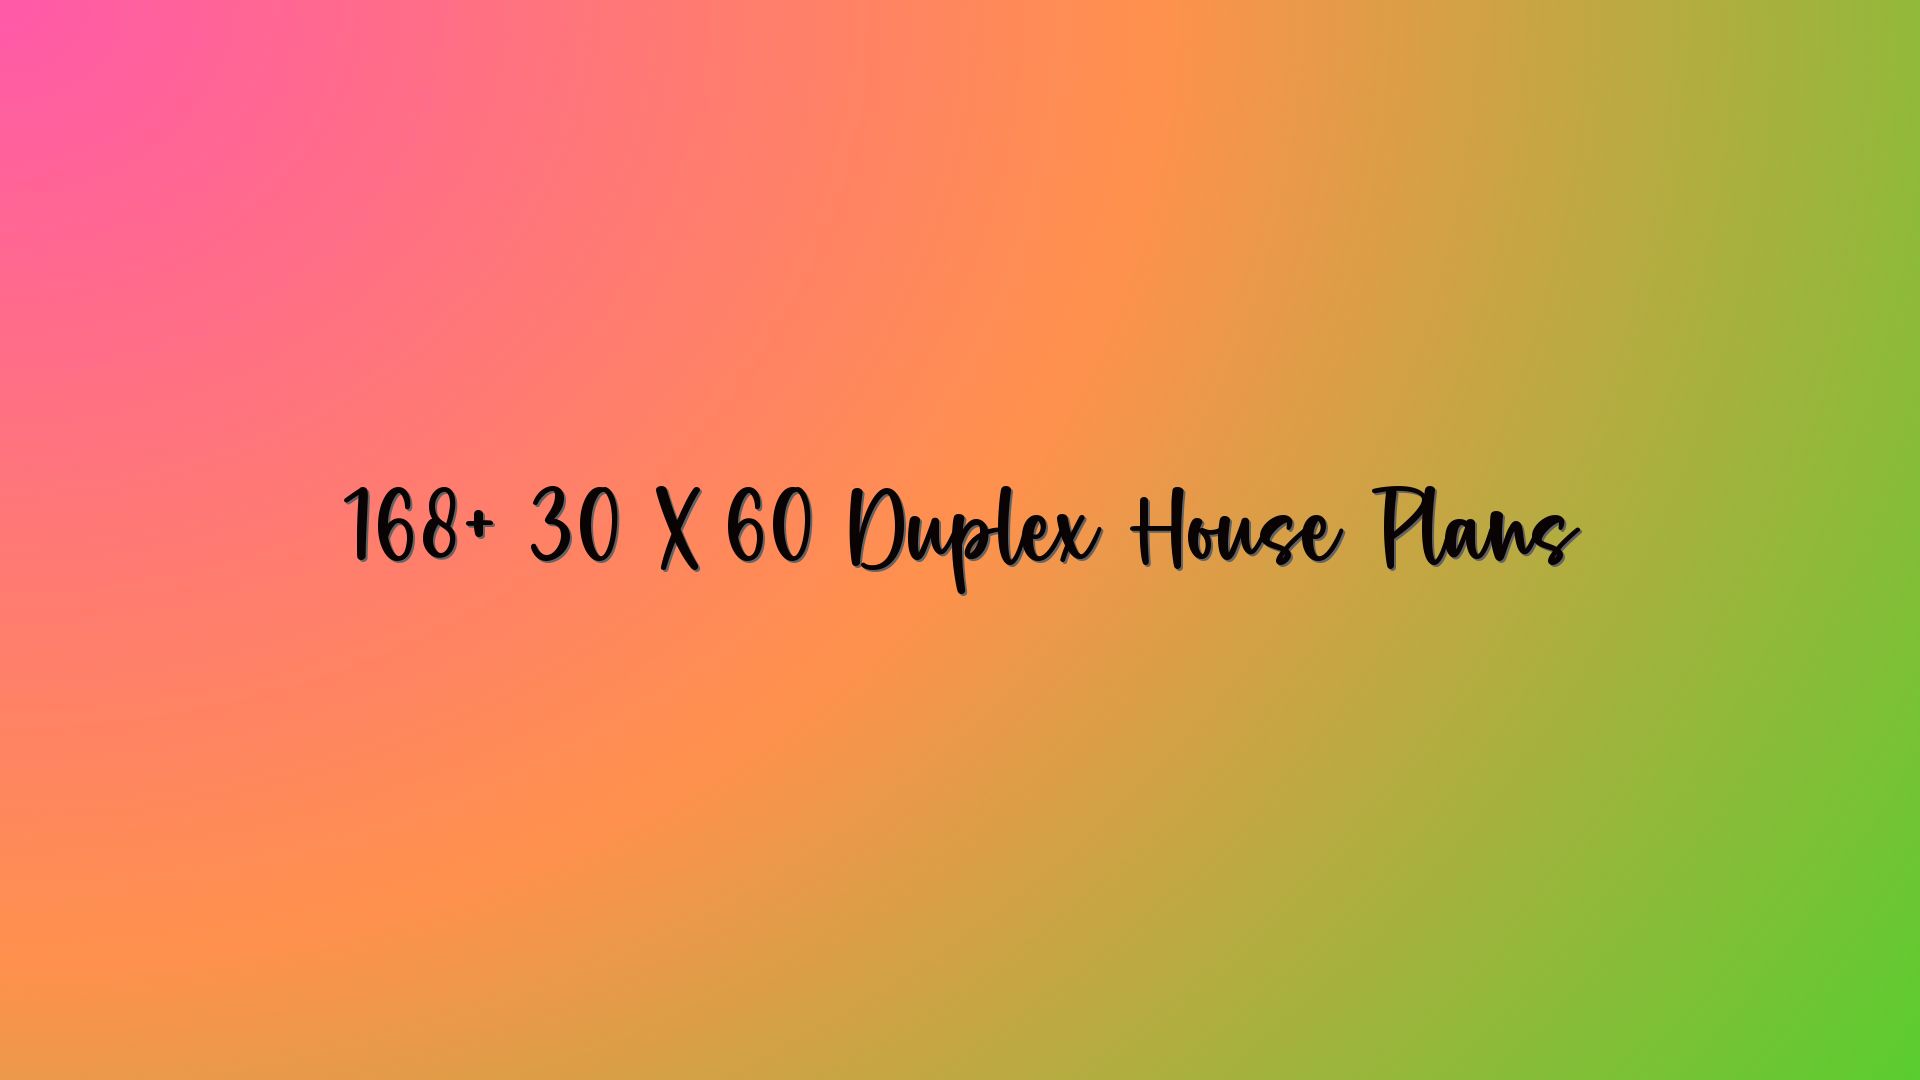 168+ 30 X 60 Duplex House Plans